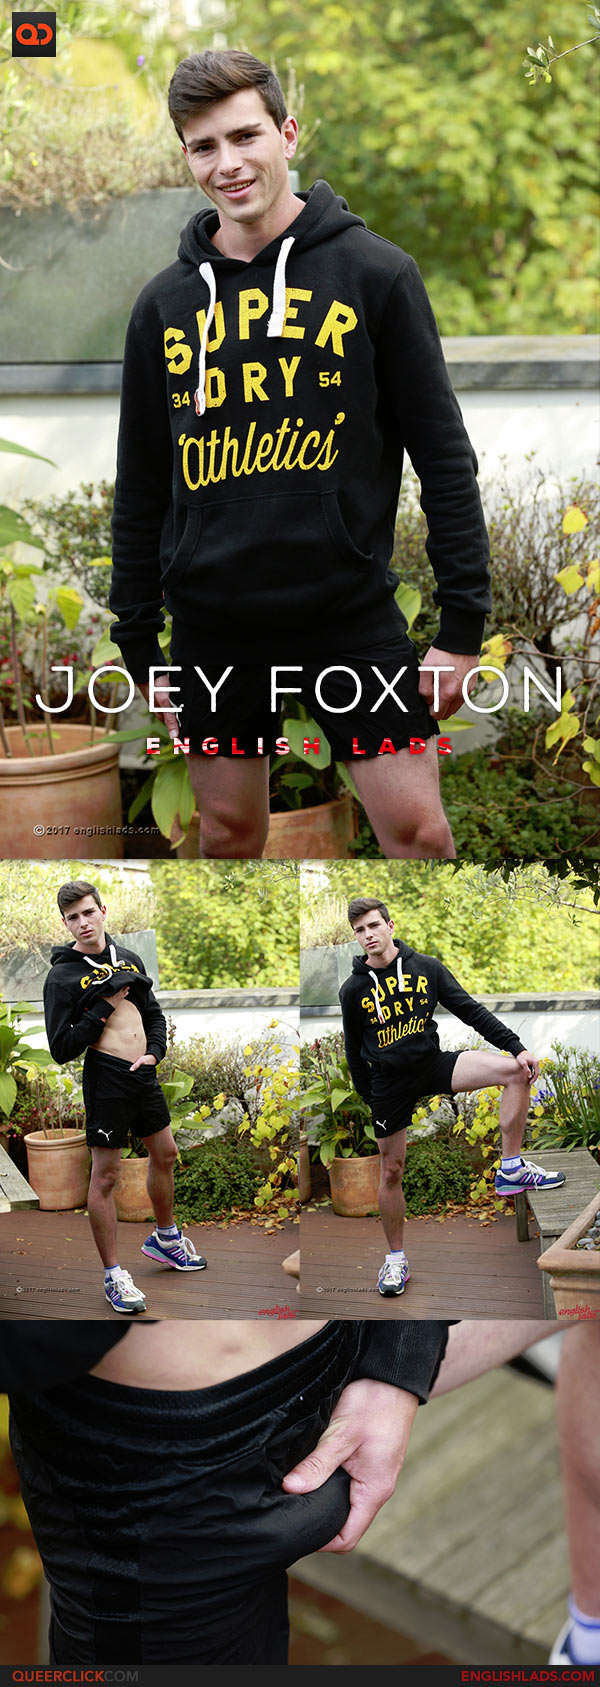 English Lads: Joey Foxton